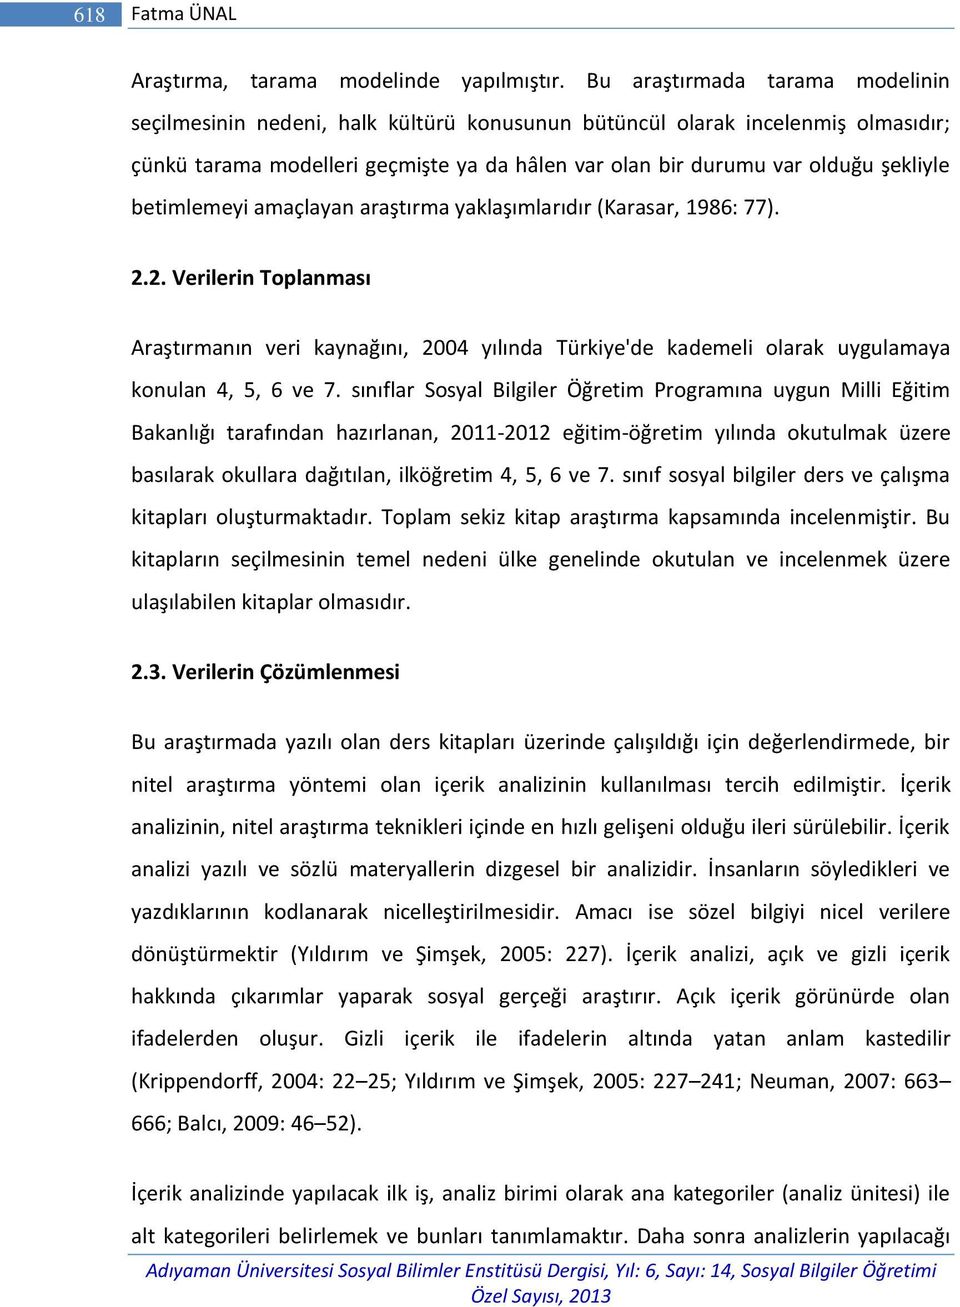 betimlemeyi amaçlayan araştırma yaklaşımlarıdır (Karasar, 1986: 77). 2.2. Verilerin Toplanması Araştırmanın veri kaynağını, 2004 yılında Türkiye'de kademeli olarak uygulamaya konulan 4, 5, 6 ve 7.